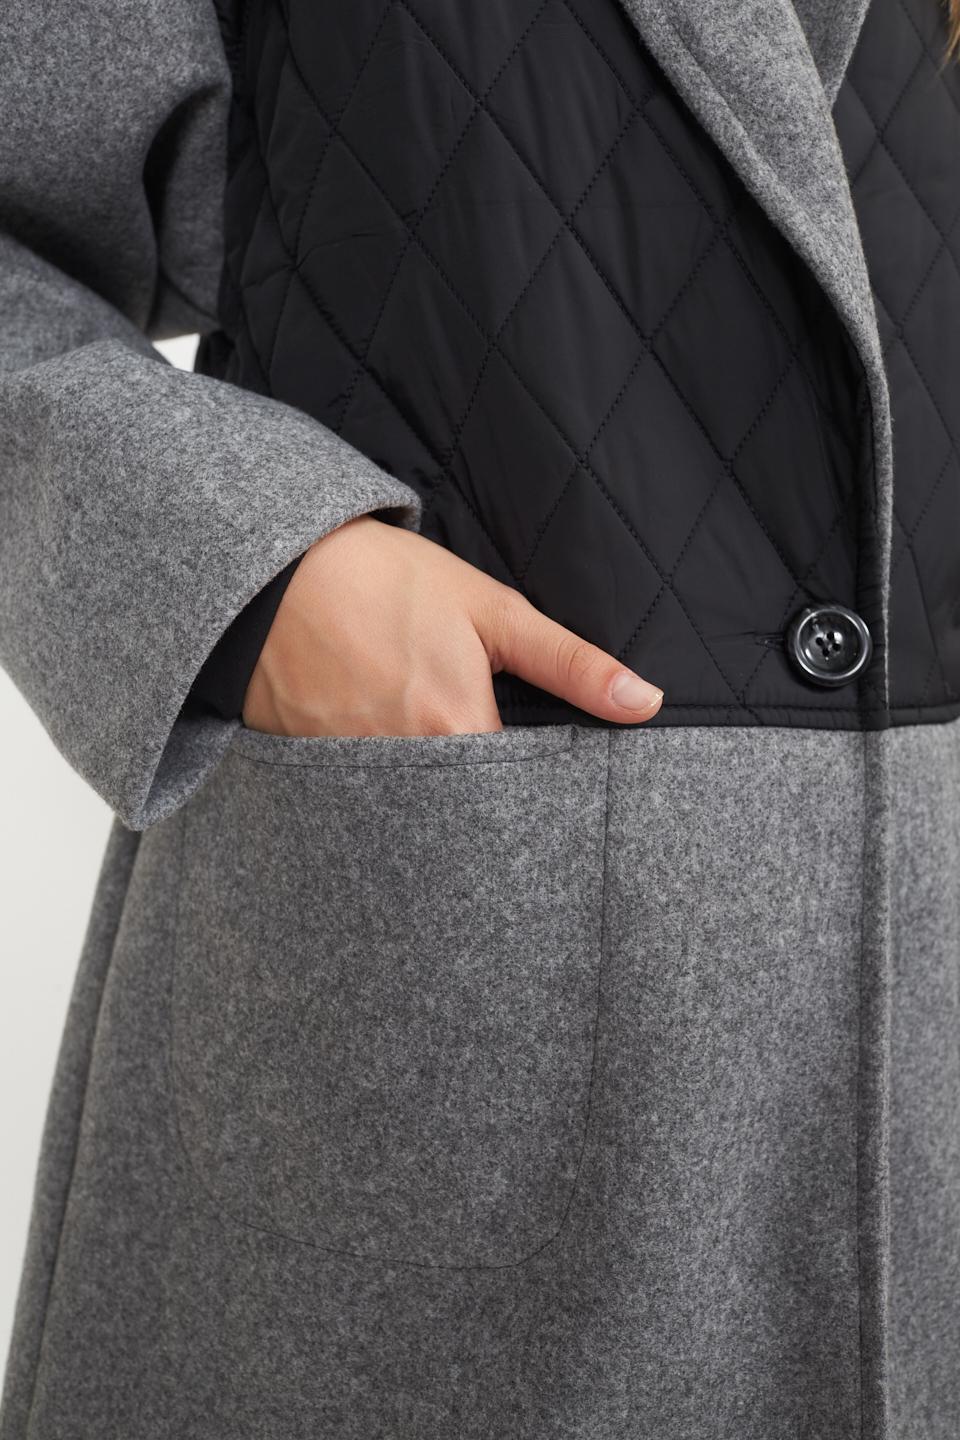 Cappotto nero/grigio - cappotto 2 tessuti